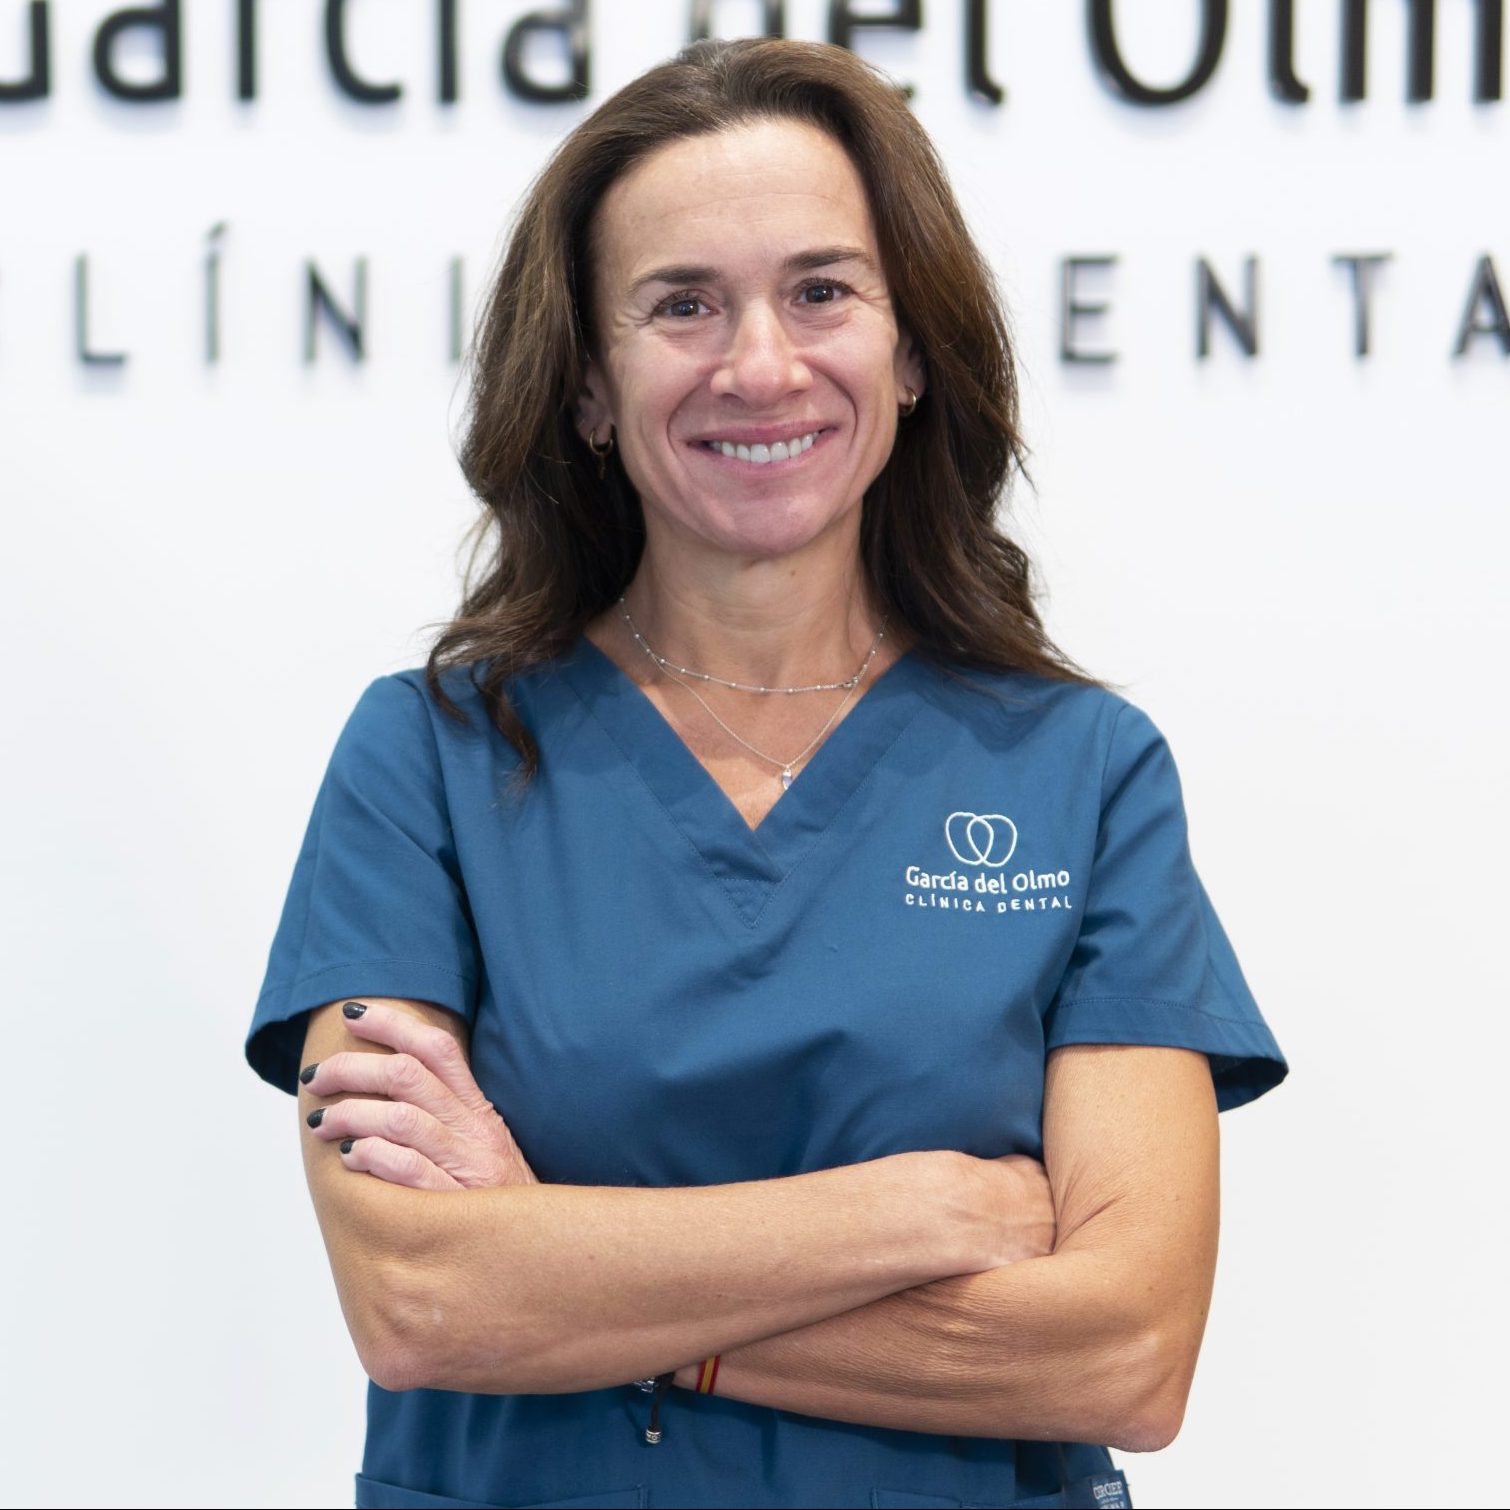 Clínica Dental García del Olmo, Dra. Lola Senra, Ortodoncia Invisible